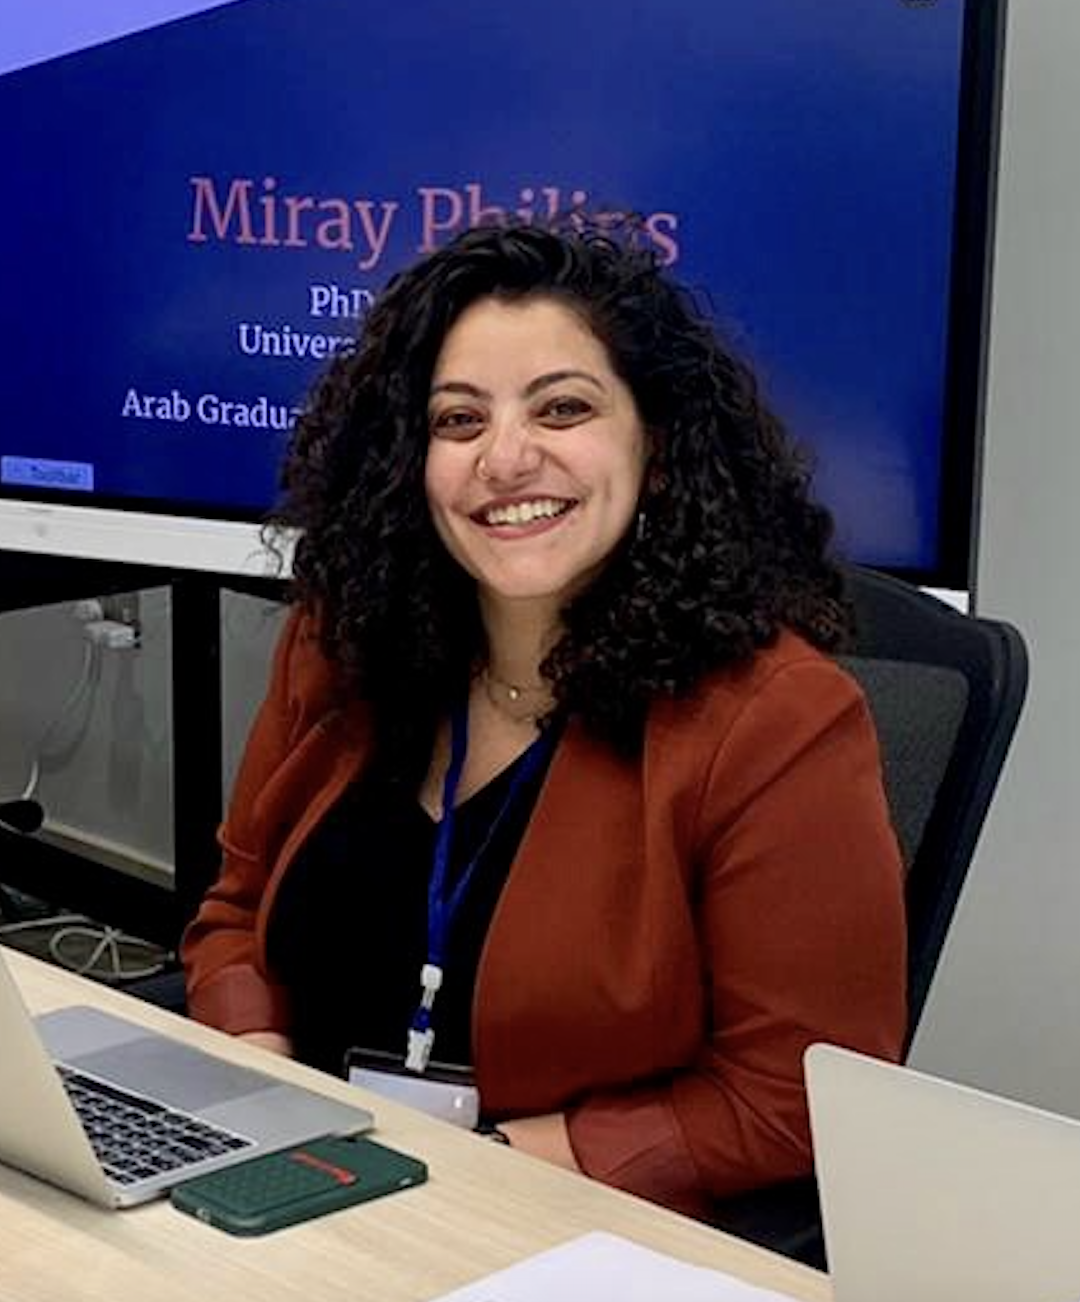 Assistant Professor Miray Philips